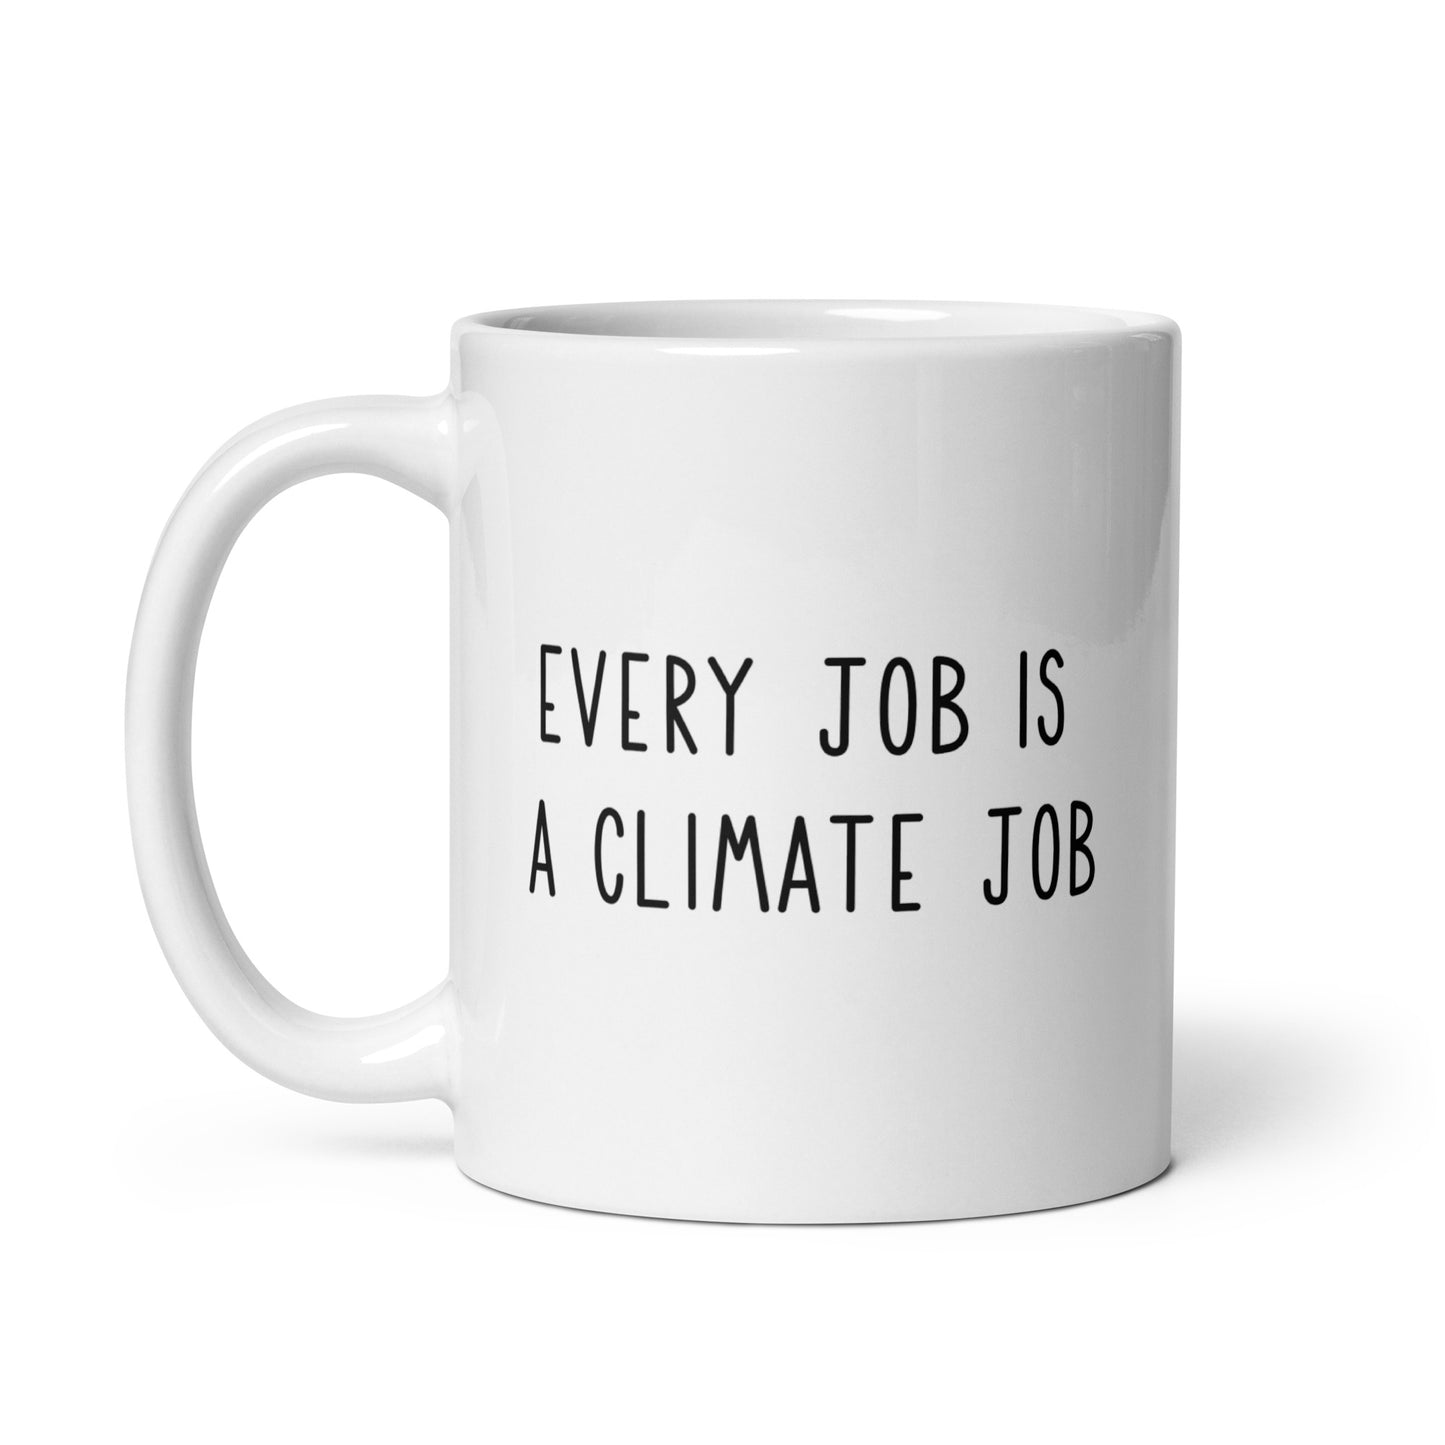 Every job is a climate job mug